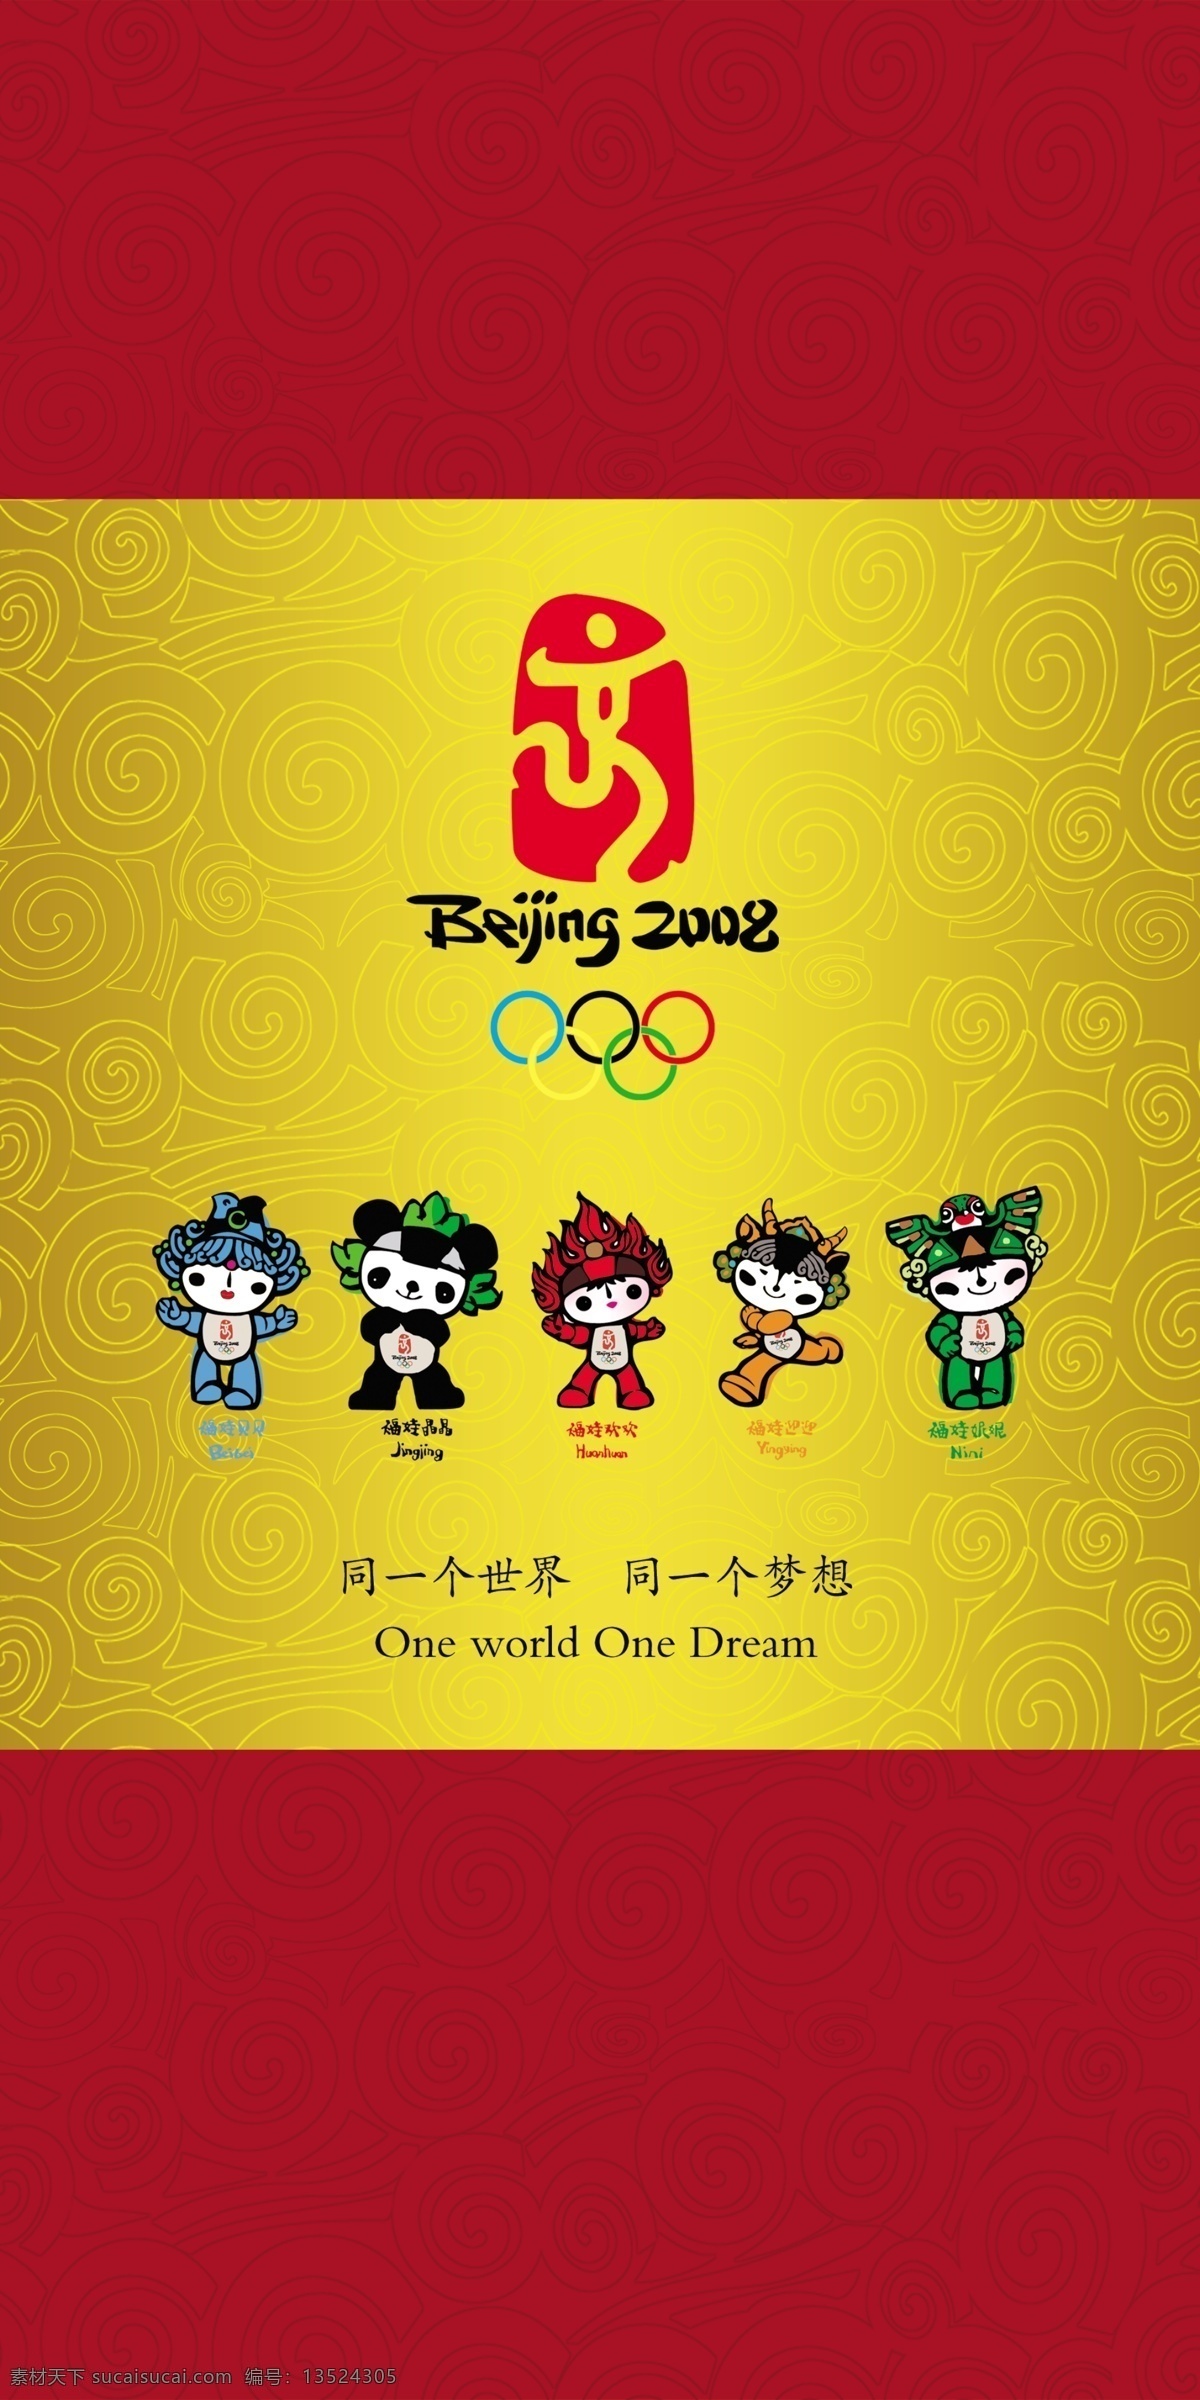 奥运 五福 柱子 舞动 北京 图标 奥运福娃 黄色褐色背景 分层 源文件